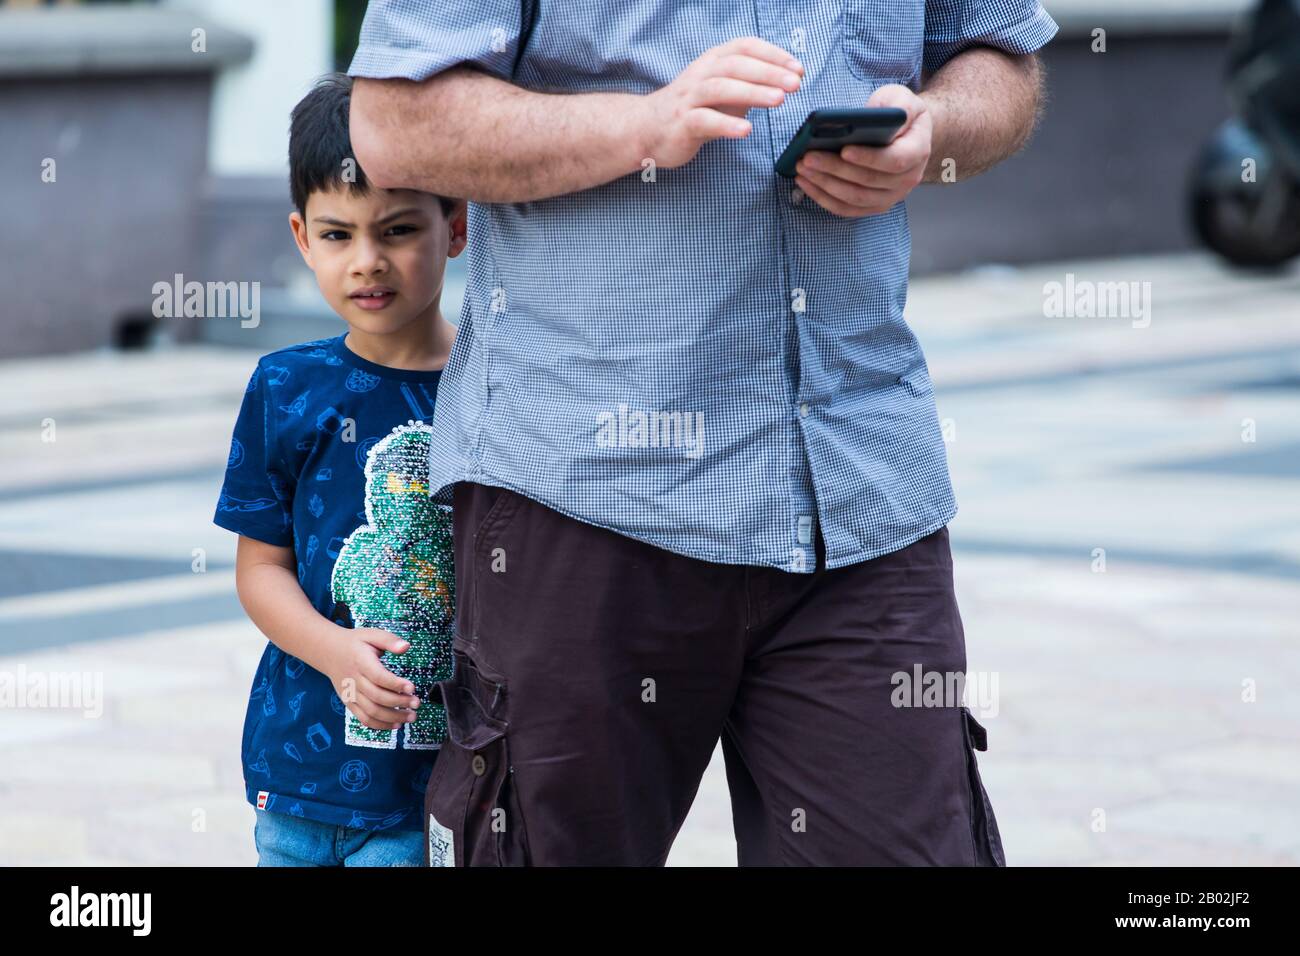 Un giovane e timido ragazzo arabico cerca di nascondersi dietro il padre mentre l'uomo o probabilmente suo padre è occupato sul suo cellulare. Foto Stock